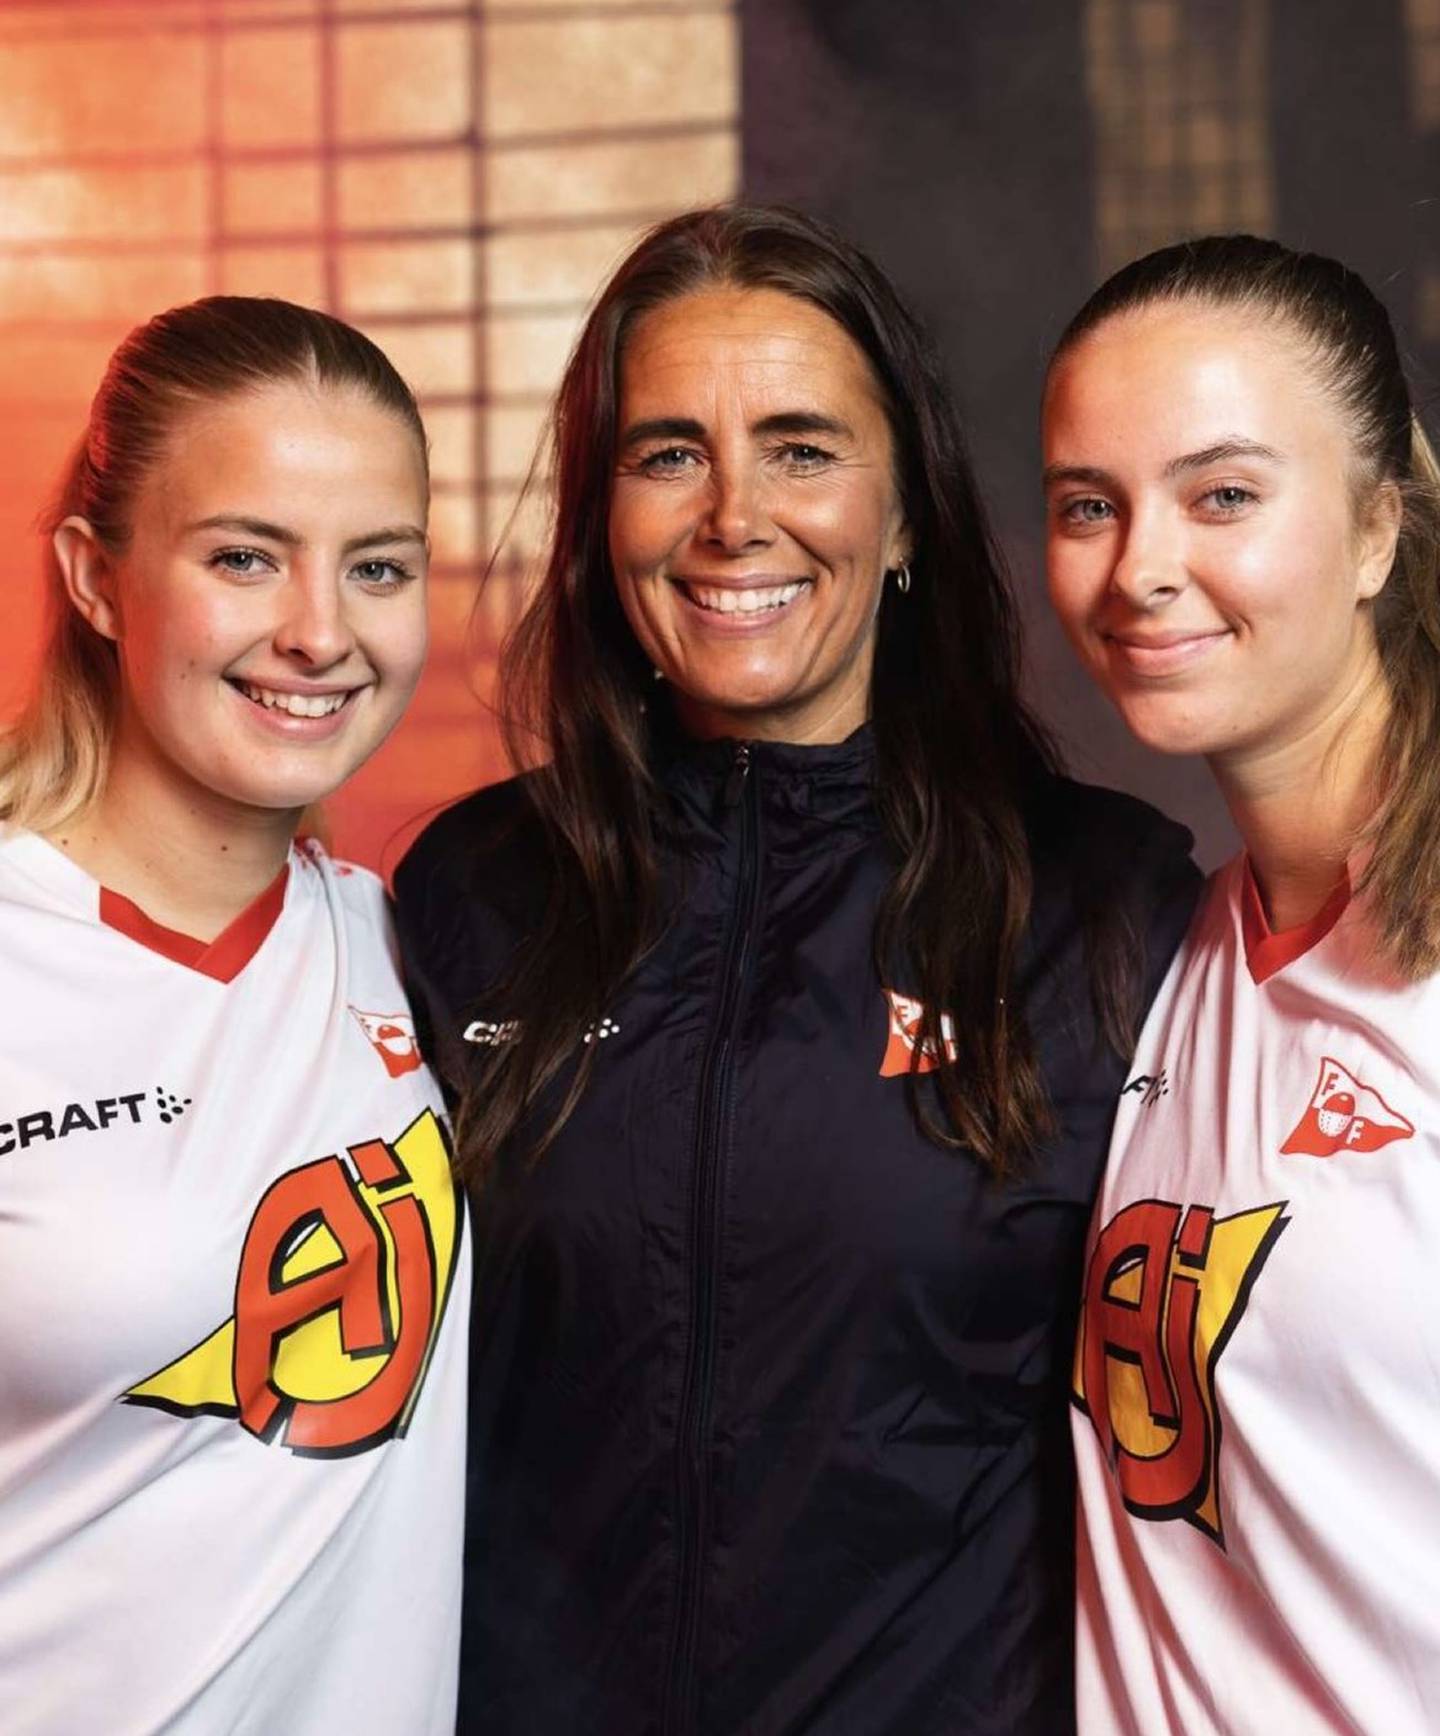 Etter at tvillingdøtrene Amanda (til venstre) og Mia ble FFK-spillere i 2020, ble Mona Enerly etter hvert trener også der. Nå er hun klar for Uefa B-trenerkurs til høsten for å oppgradere kompetansen.